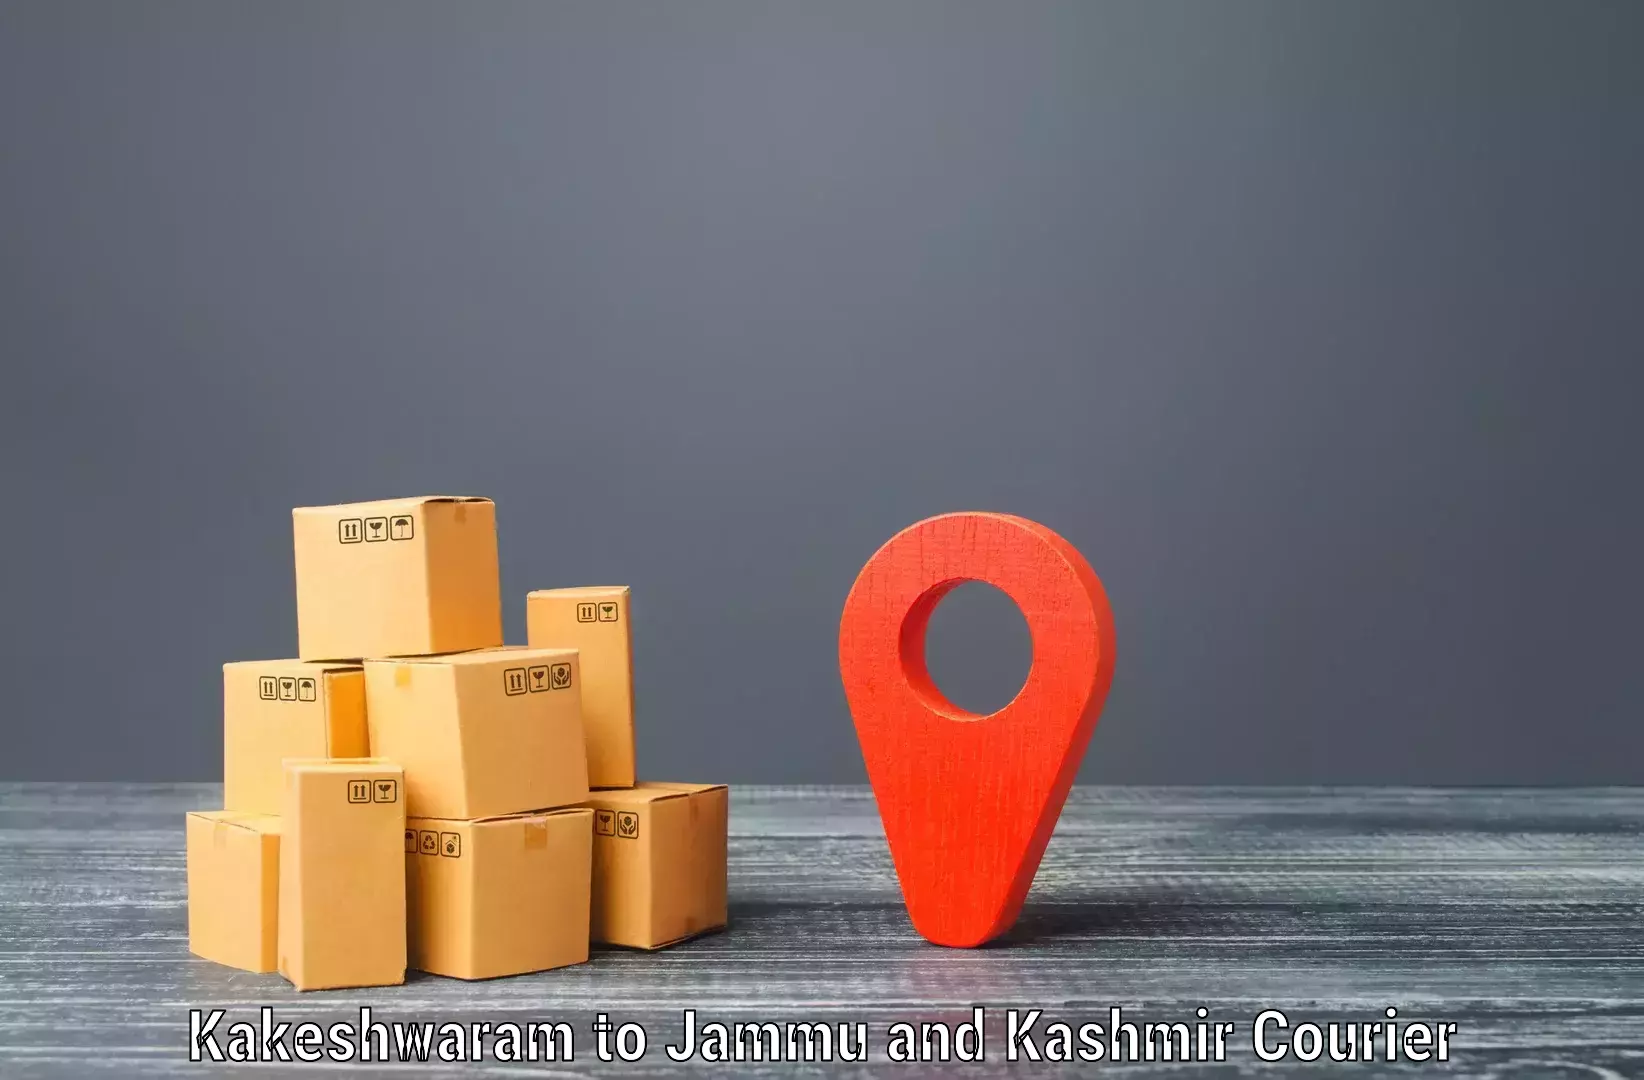 Efficient shipping platforms Kakeshwaram to Jakh